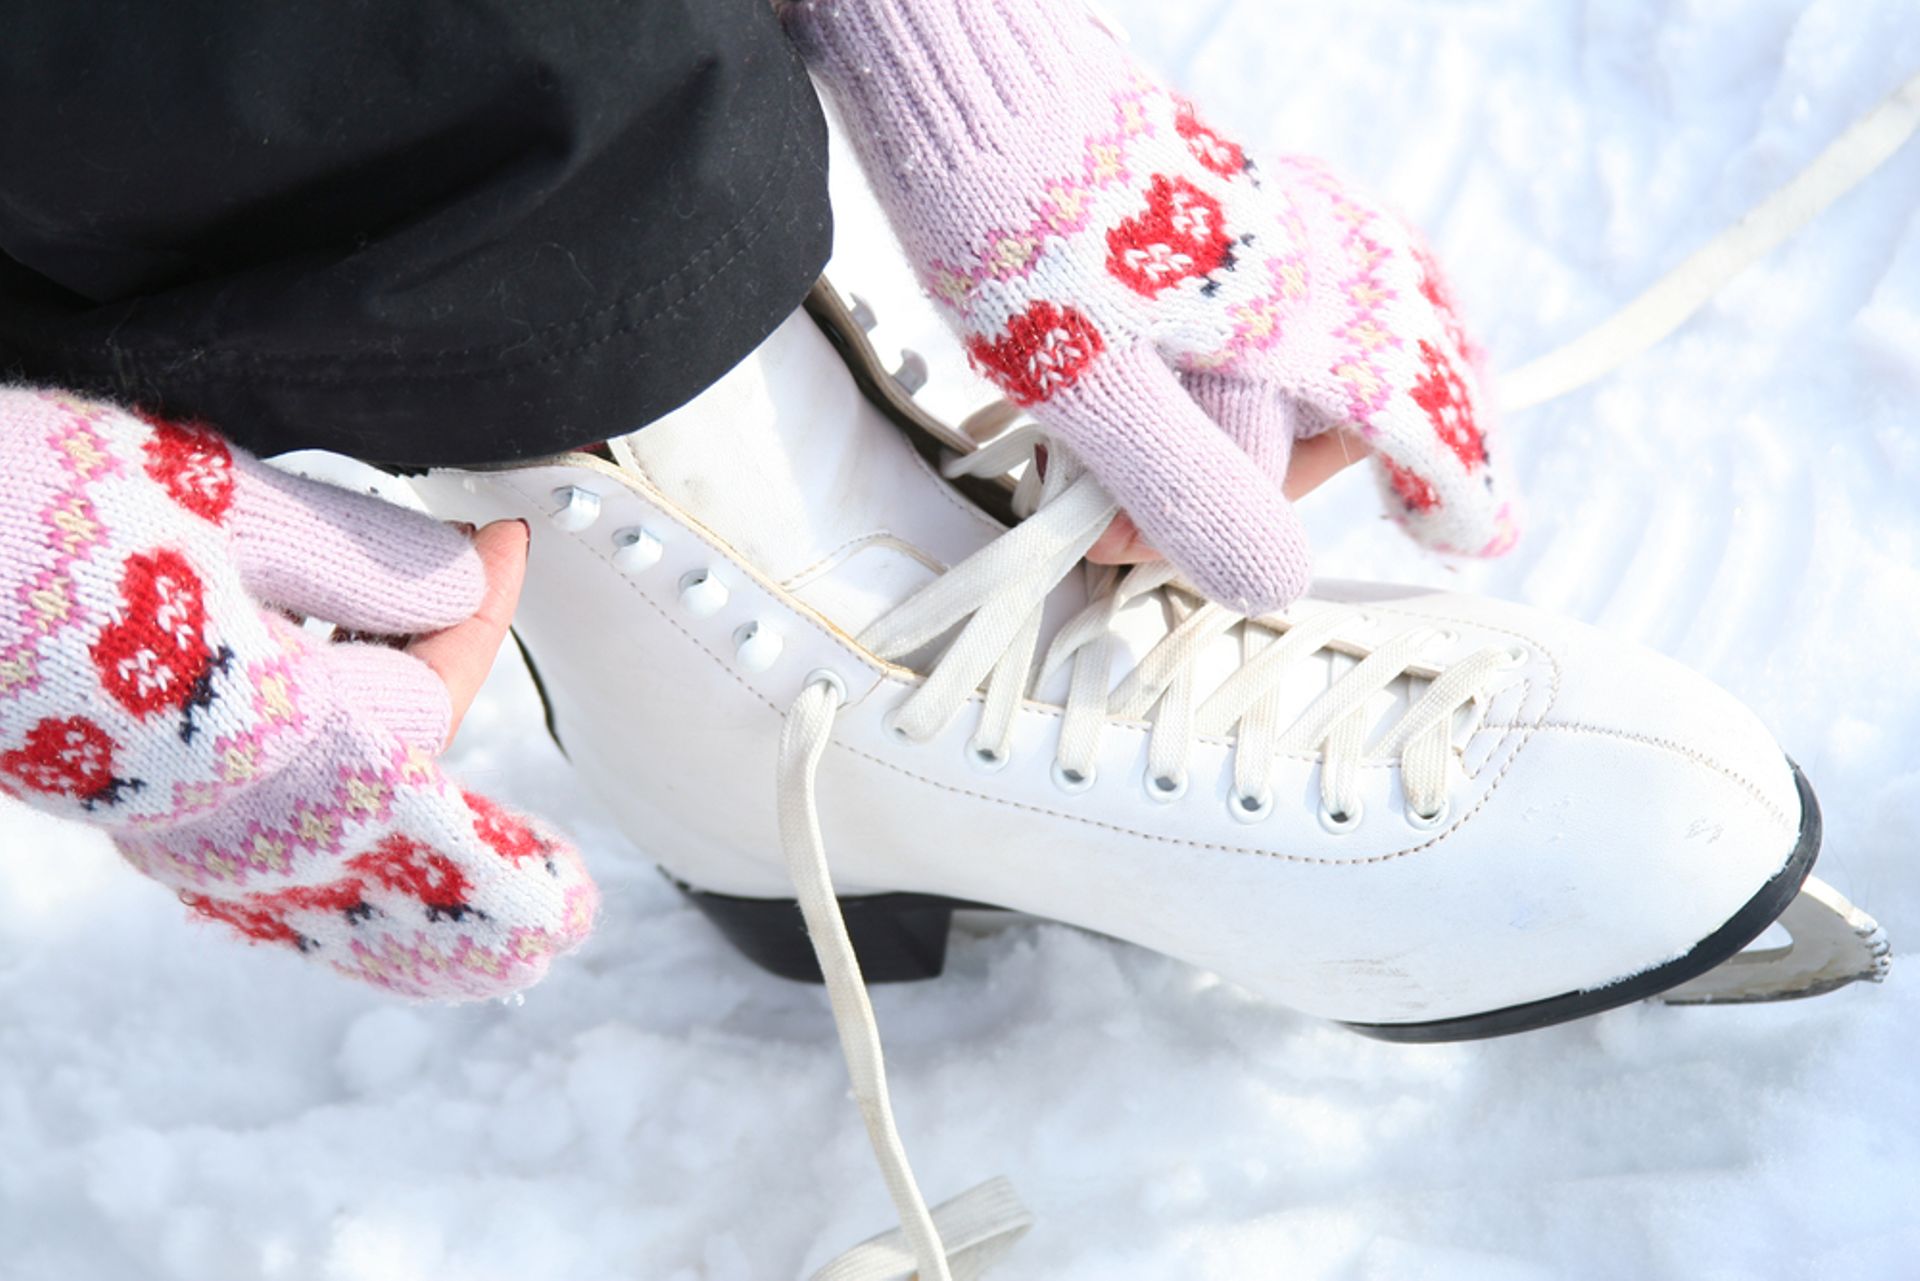 Comment faire du sport en s'amusant et en restant fidèle à l'esprit de Noël? En optant pour le patin à glace.